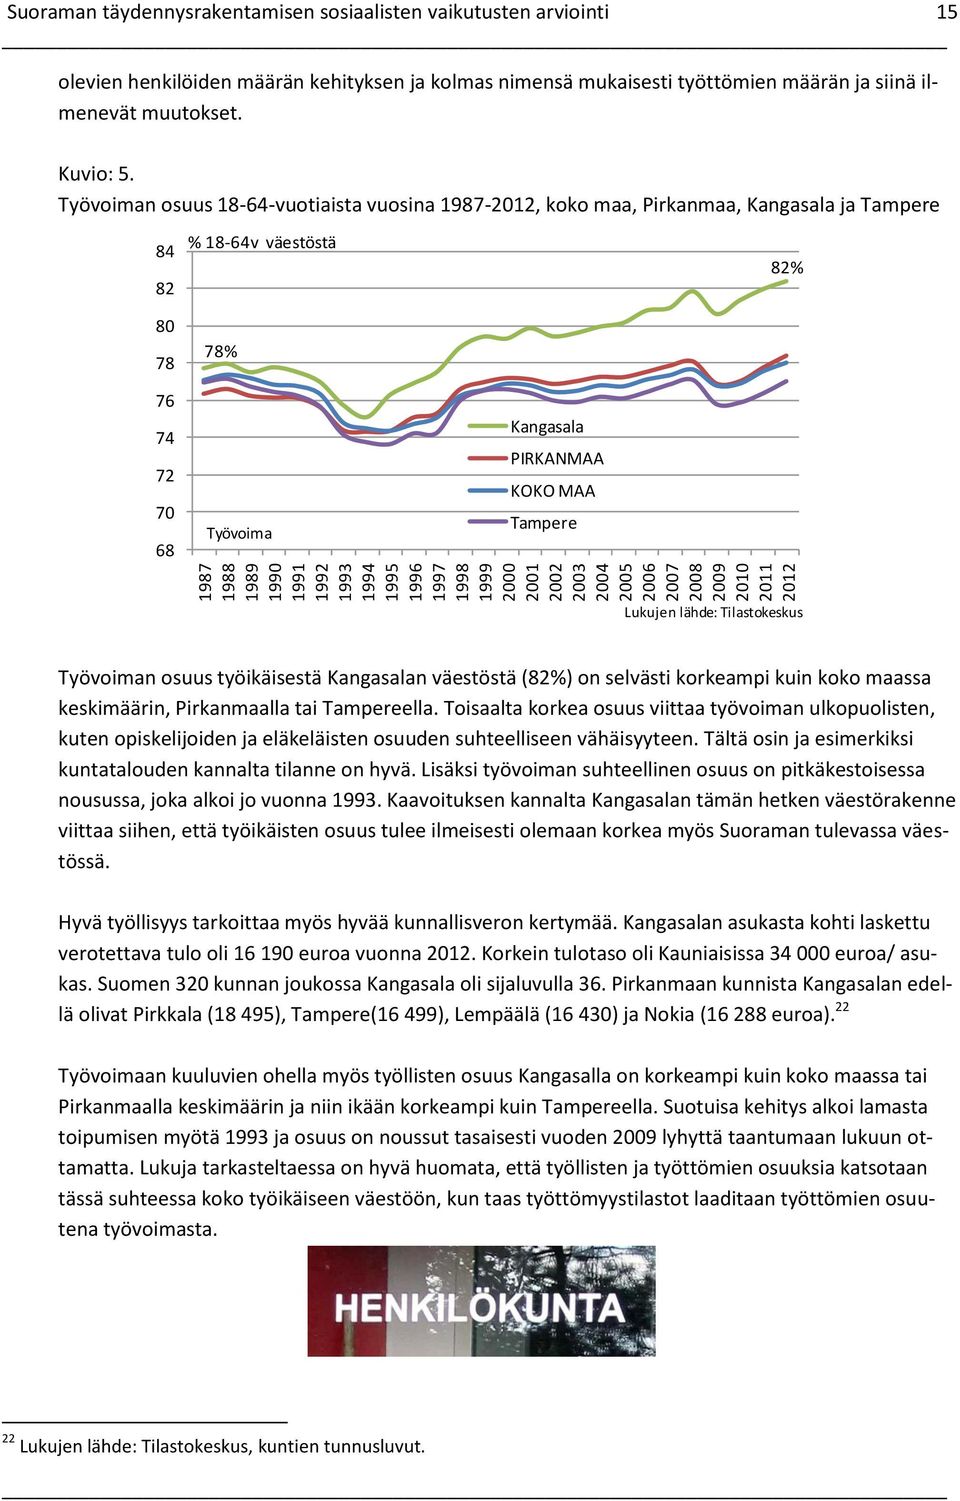 Työvoiman osuus 18-64-vuotiaista vuosina 1987-212, koko maa, Pirkanmaa, Kangasala ja Tampere 84 82 8 78 % 18-64v väestöstä 78% 82% 76 74 72 7 68 Työvoima Kangasala PIRKANMAA KOKO MAA Tampere Lukujen